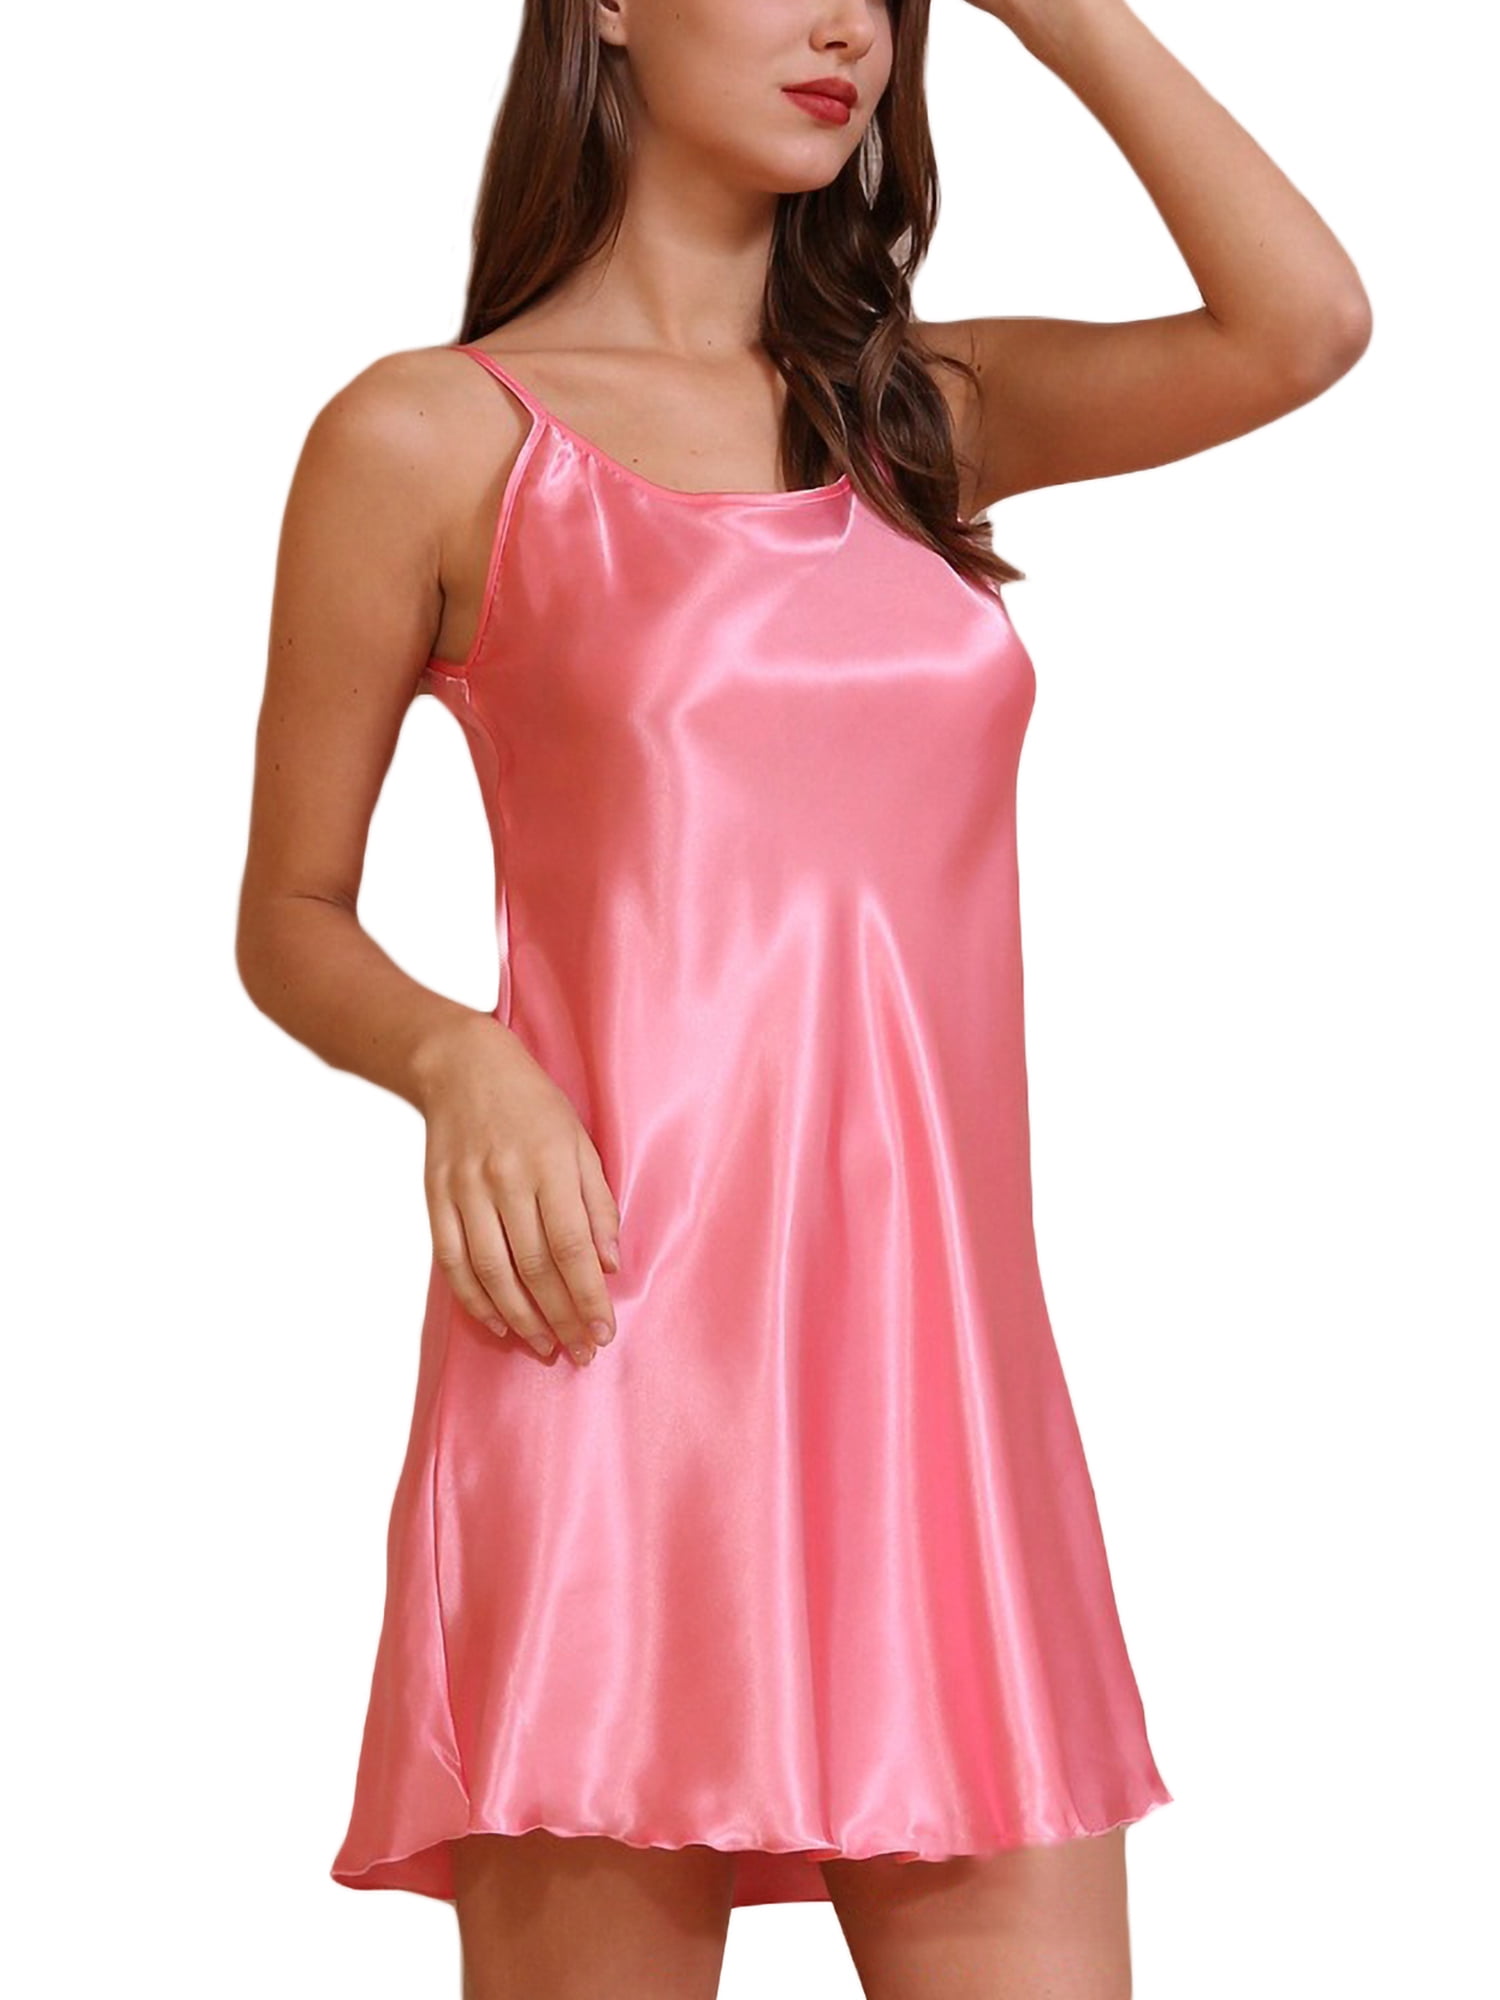 Ladies Girls Nighty Gown Mini Sleeveless Night Dress Soft Stretch Sleepwear